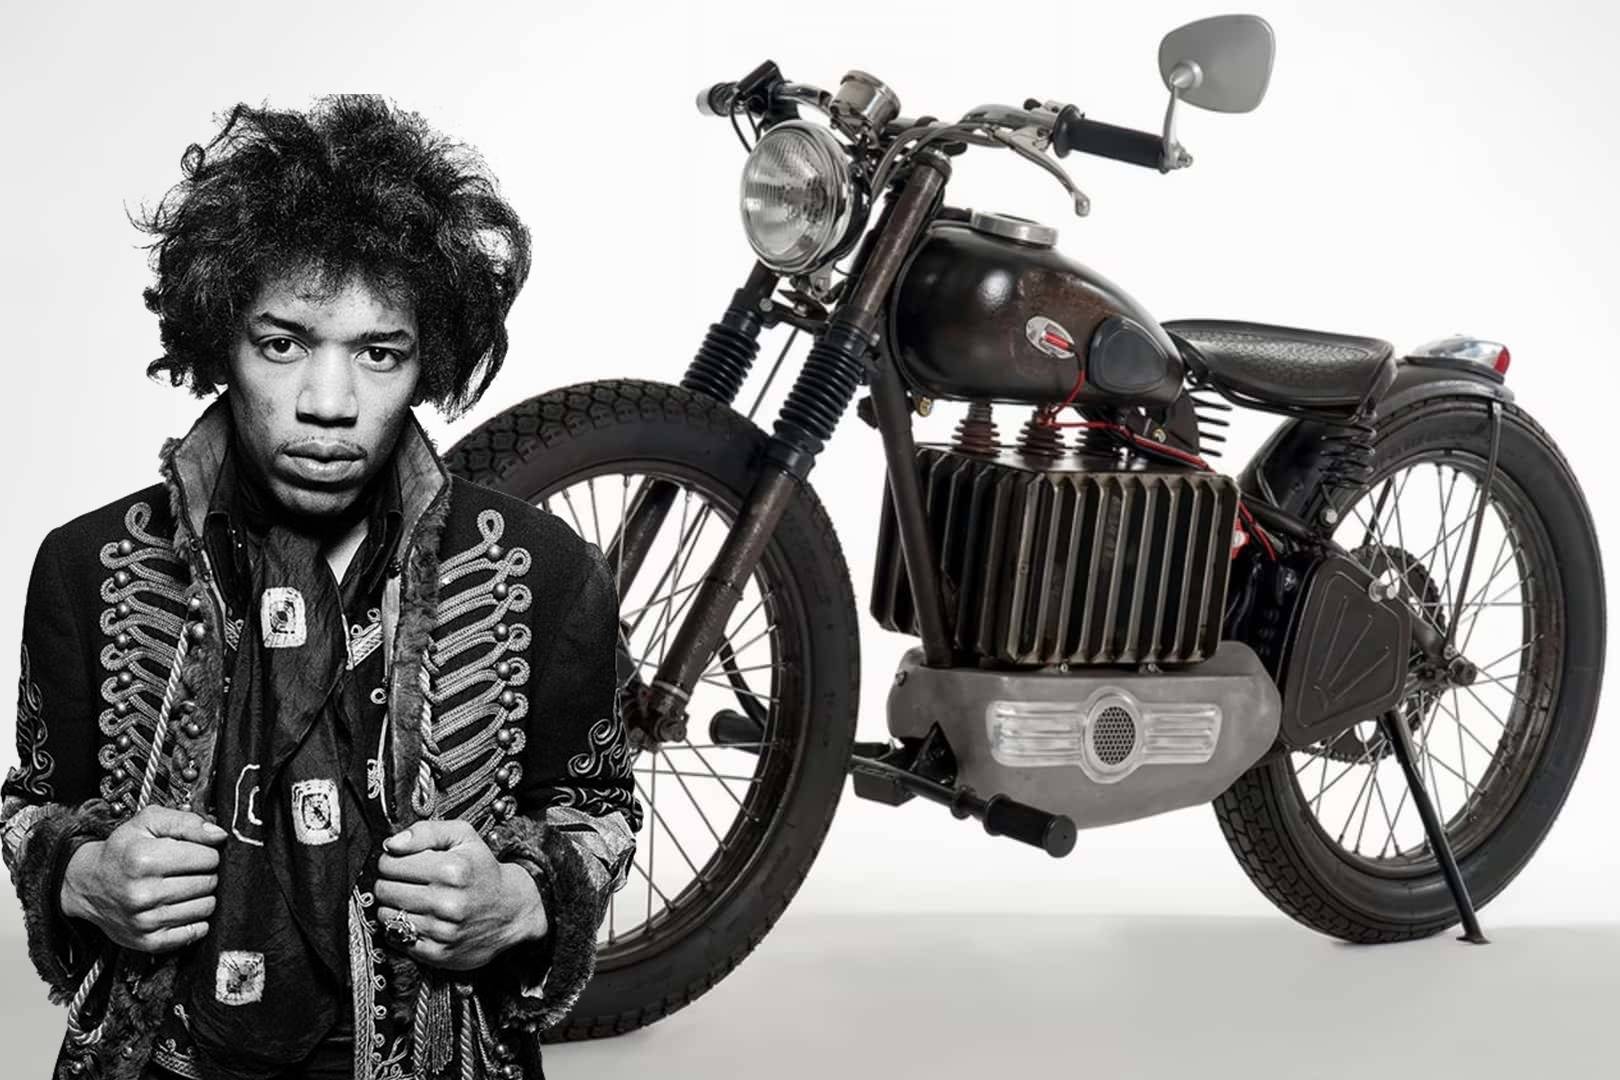 Electric Ladyland: La moto retro que le rinde tributo a Jimi Hendrix